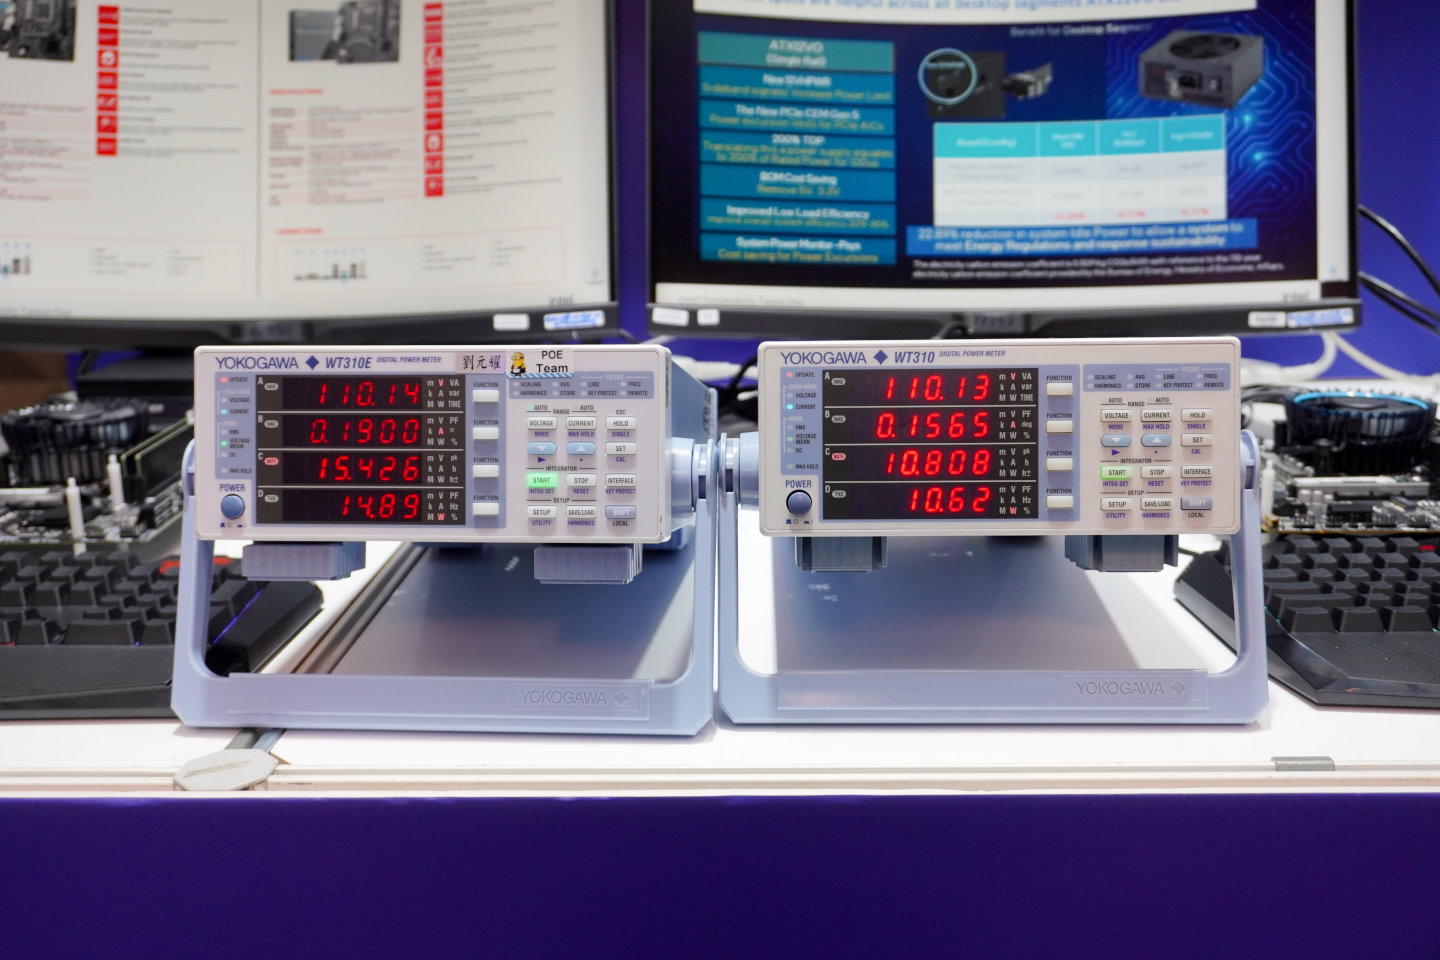 ATX 12VO的桌上型電腦（右）在閒置時平均全機功耗為10.808W，而使用傳統電源的電腦（左）則為15.426W。